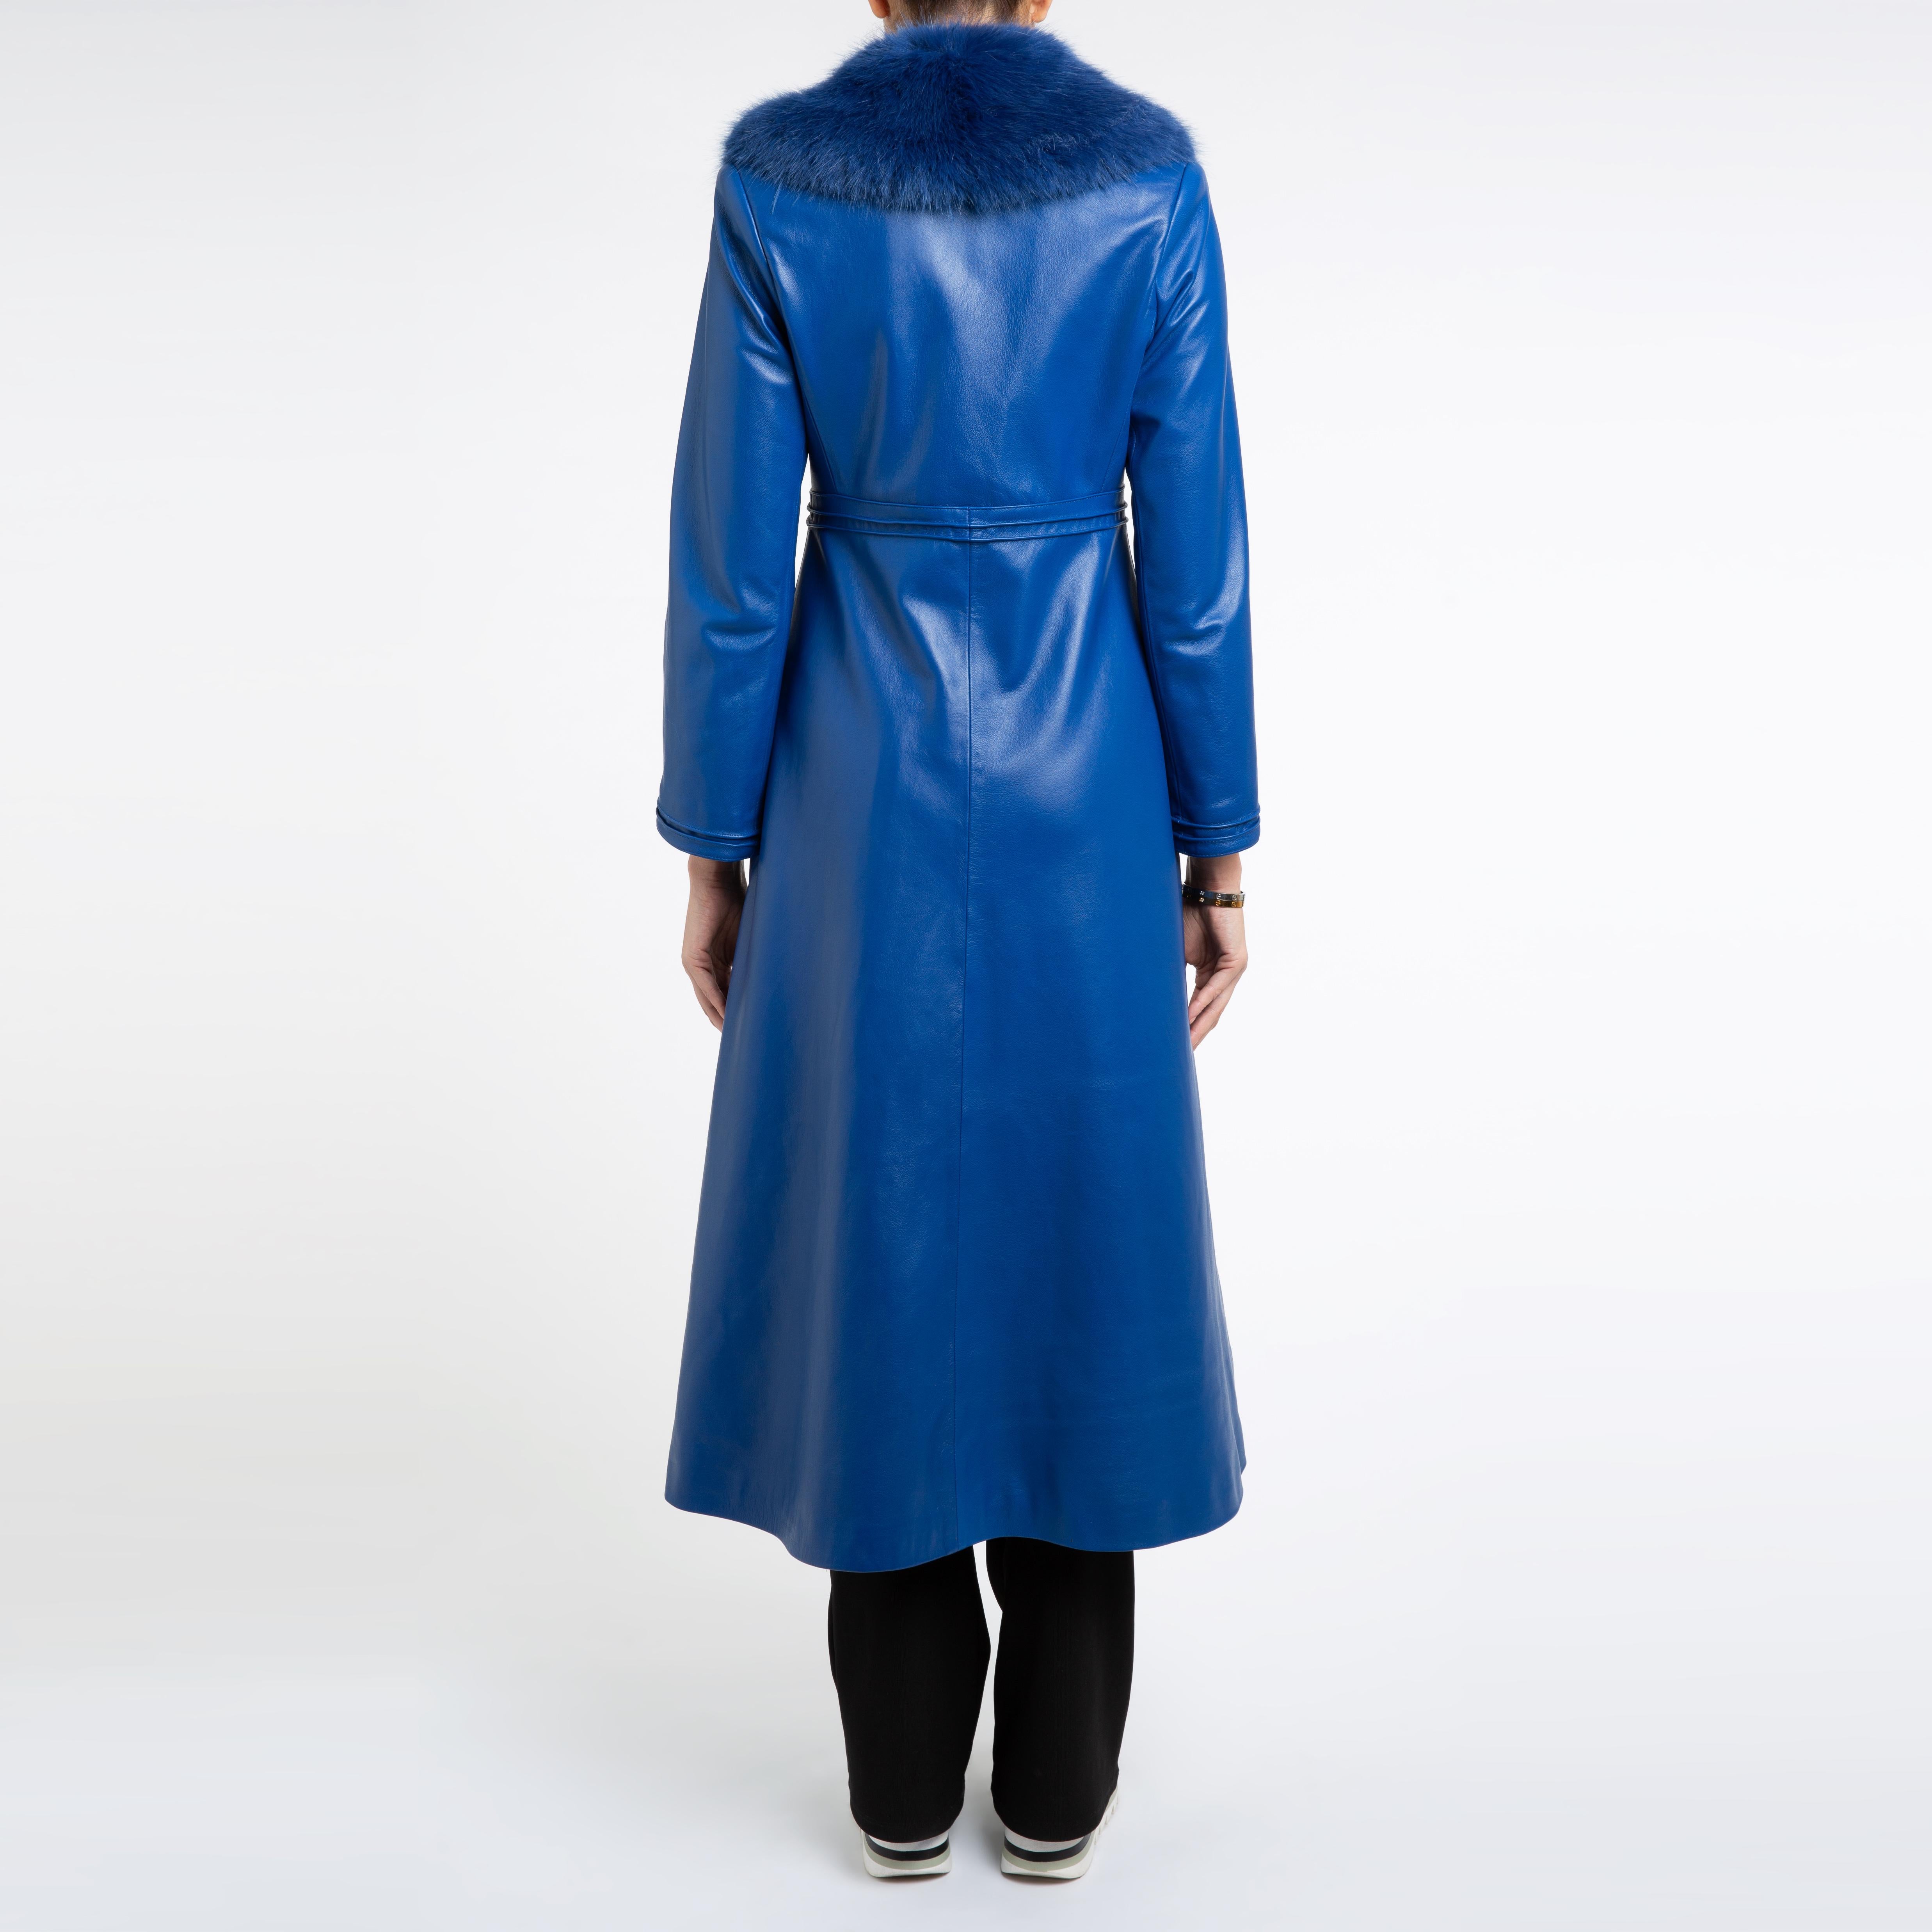 Verheyen London Edward Leather Coat in Blue with Faux Fur - Size uk 12 For Sale 1